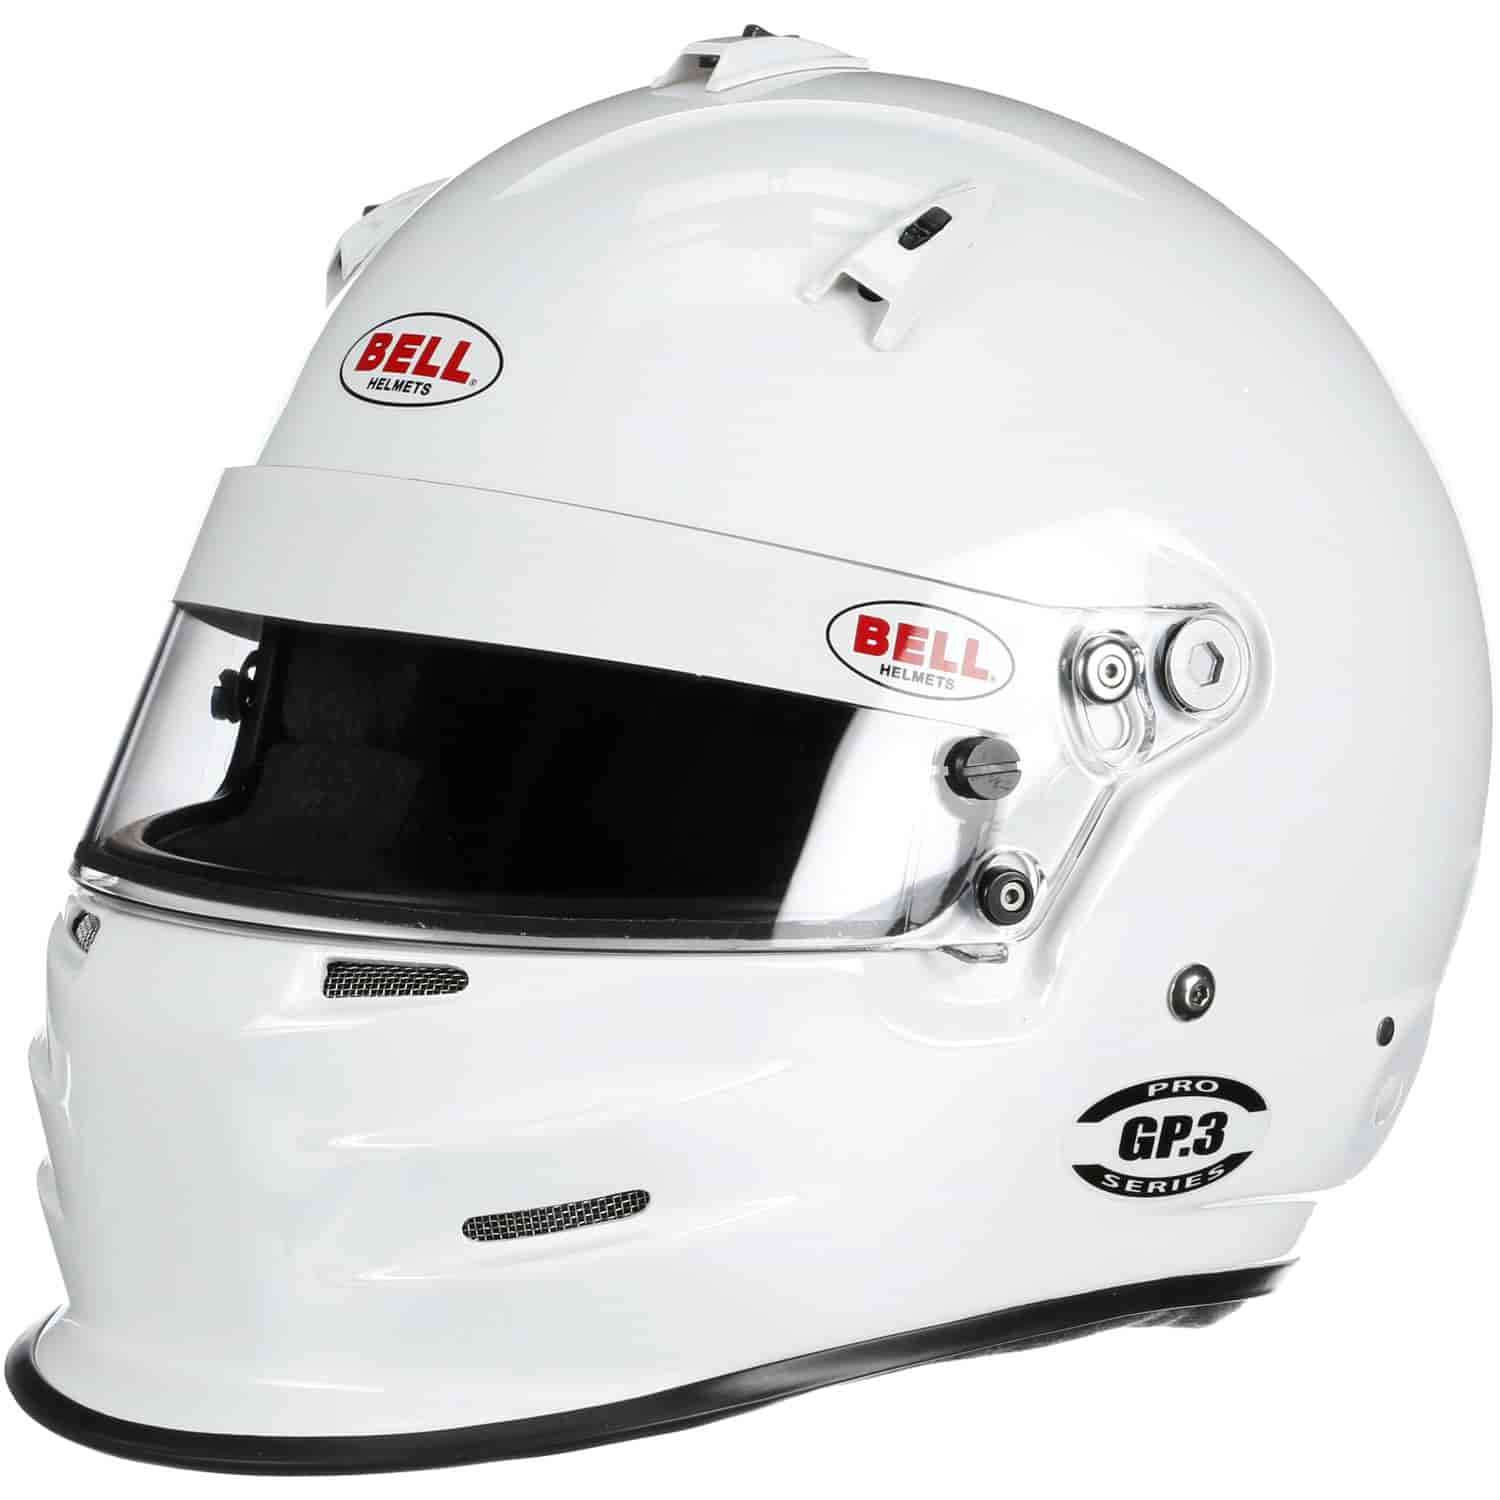 GP.3 Helmet SA2015 Certified